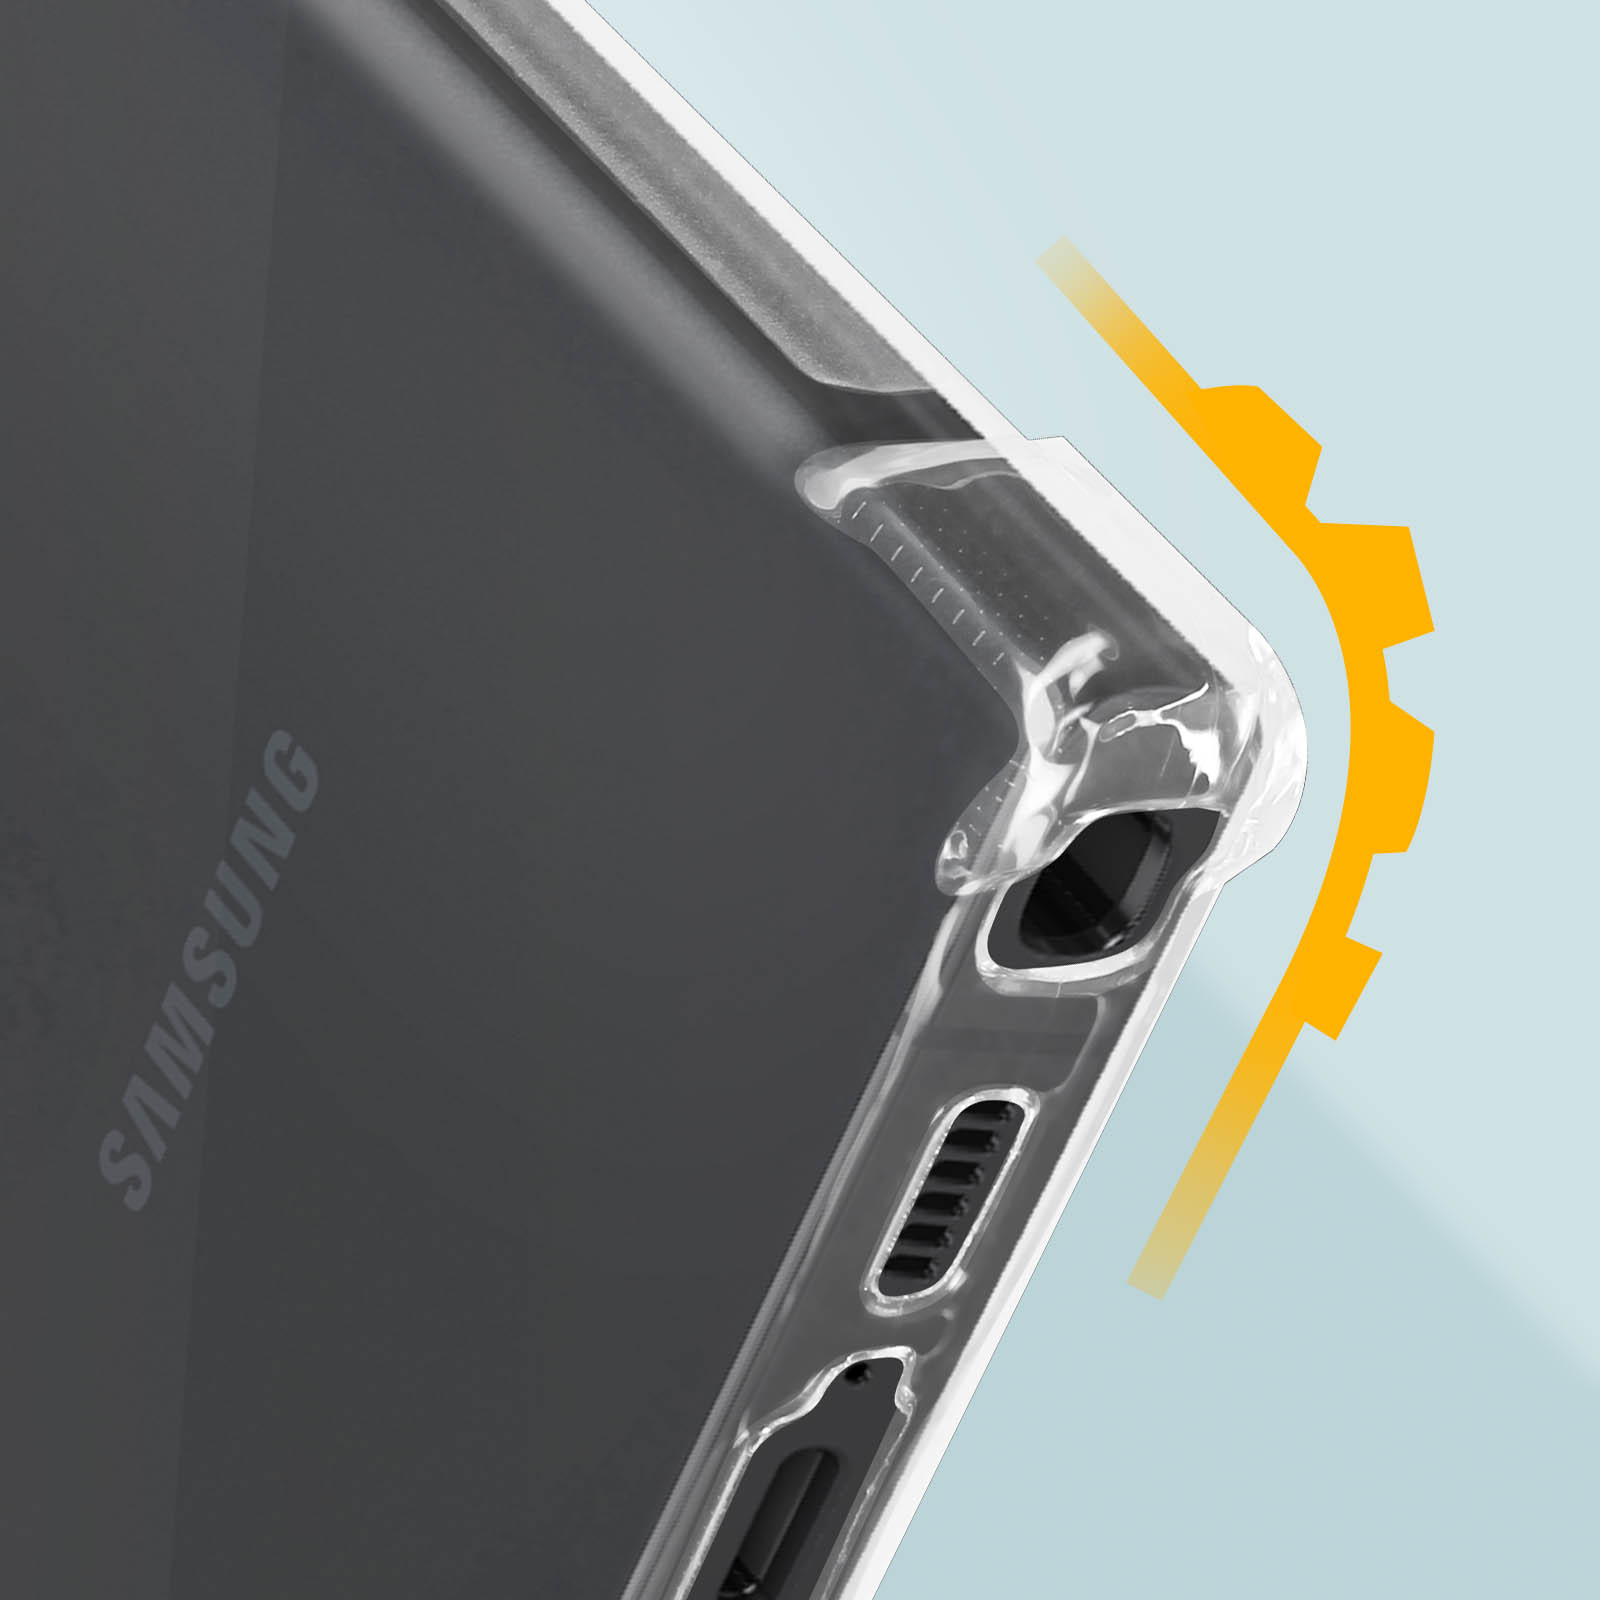 AVIZAR Schutzhülle mit verstärkten Ecken S23 Series, Ultra, Samsung, Galaxy Transparent Backcover